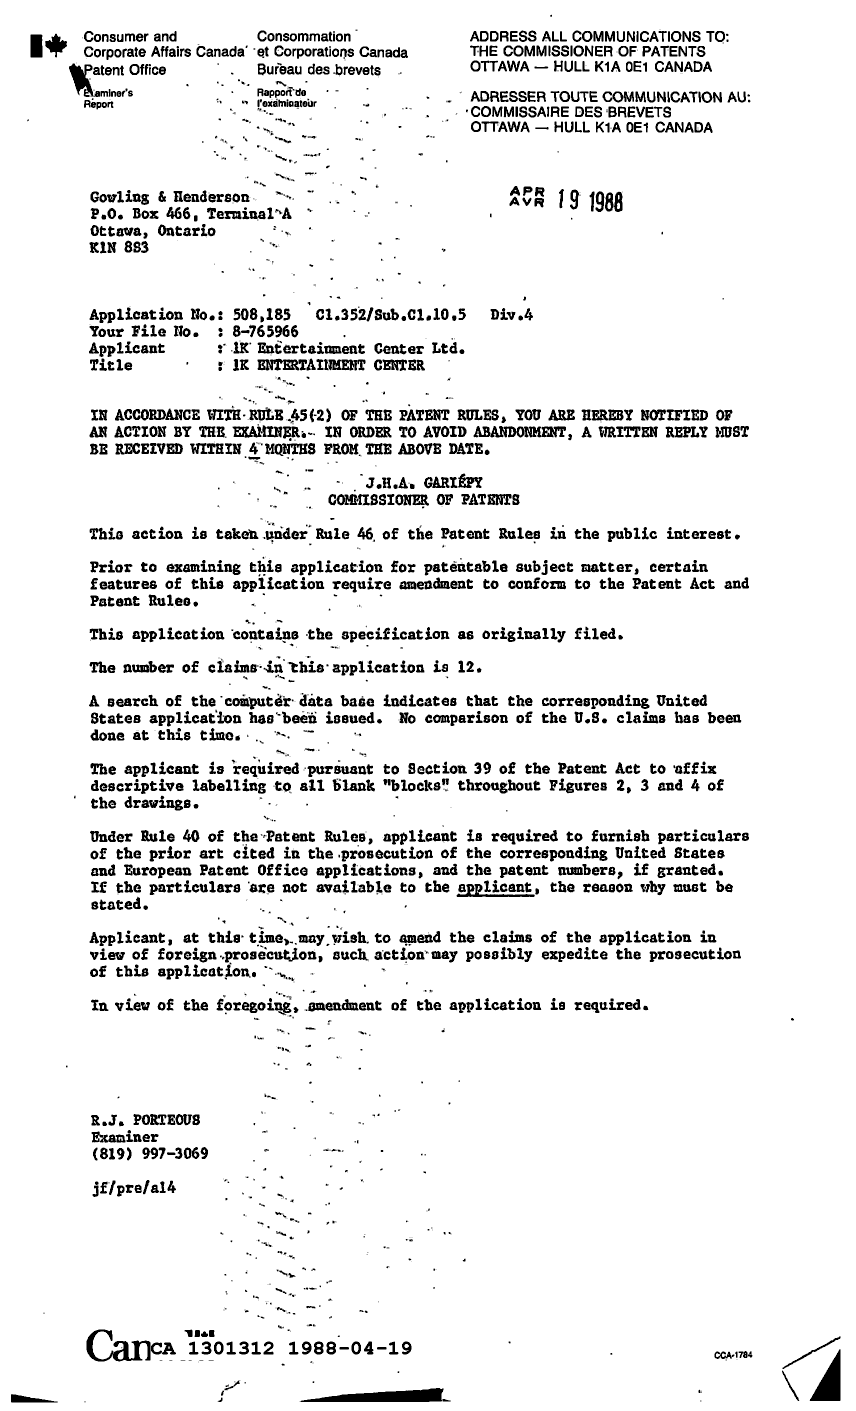 Document de brevet canadien 1301312. Demande d'examen 19880419. Image 1 de 1